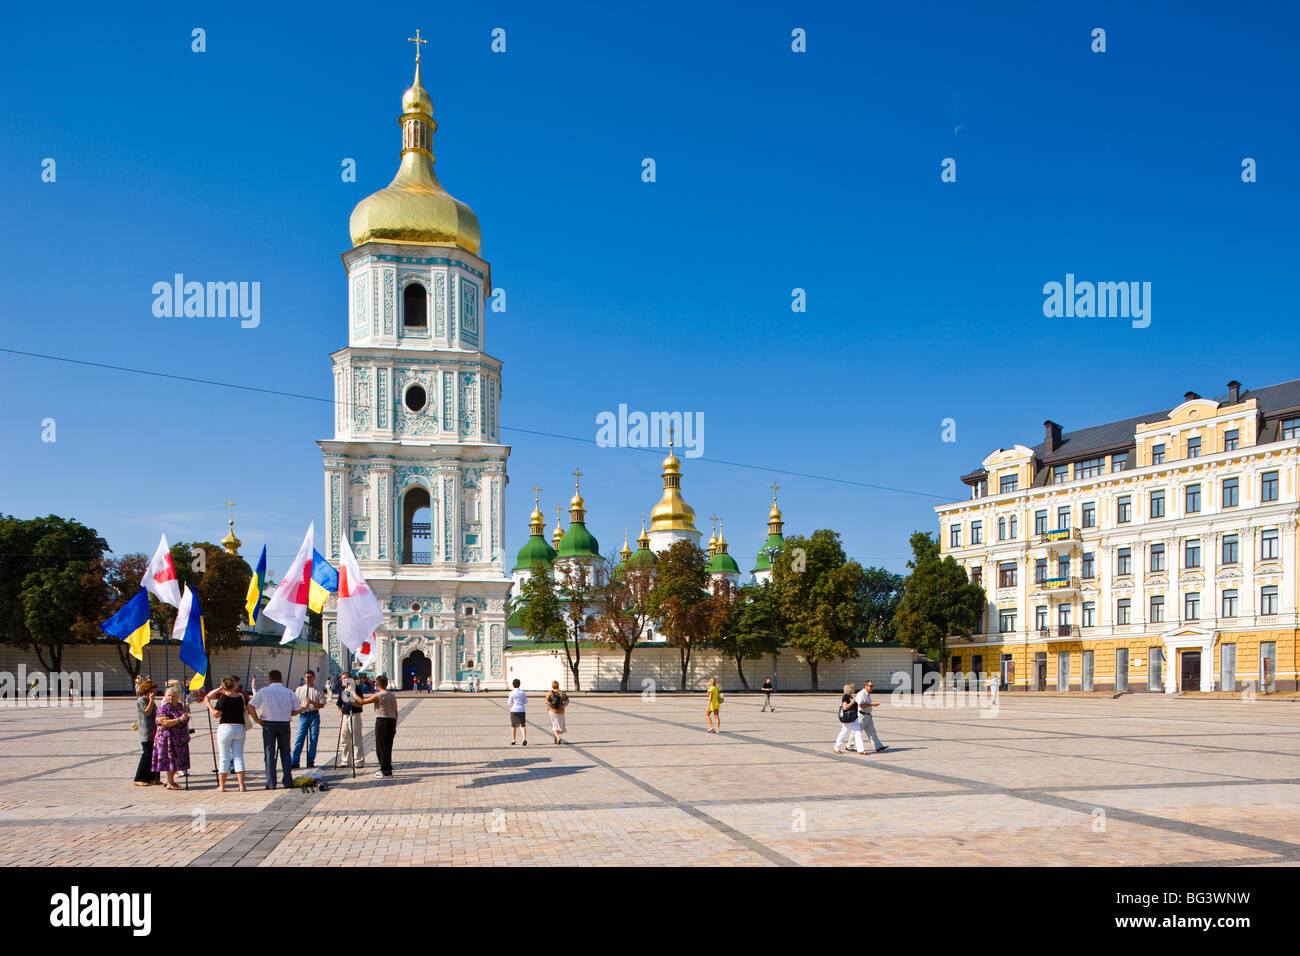 Date de l'indépendance, l'Ukrainien drapeaux nationaux sur la place devant la cathédrale Sainte-Sophie, UNESCO World Heritage Site, Kiev, Ukraine Banque D'Images